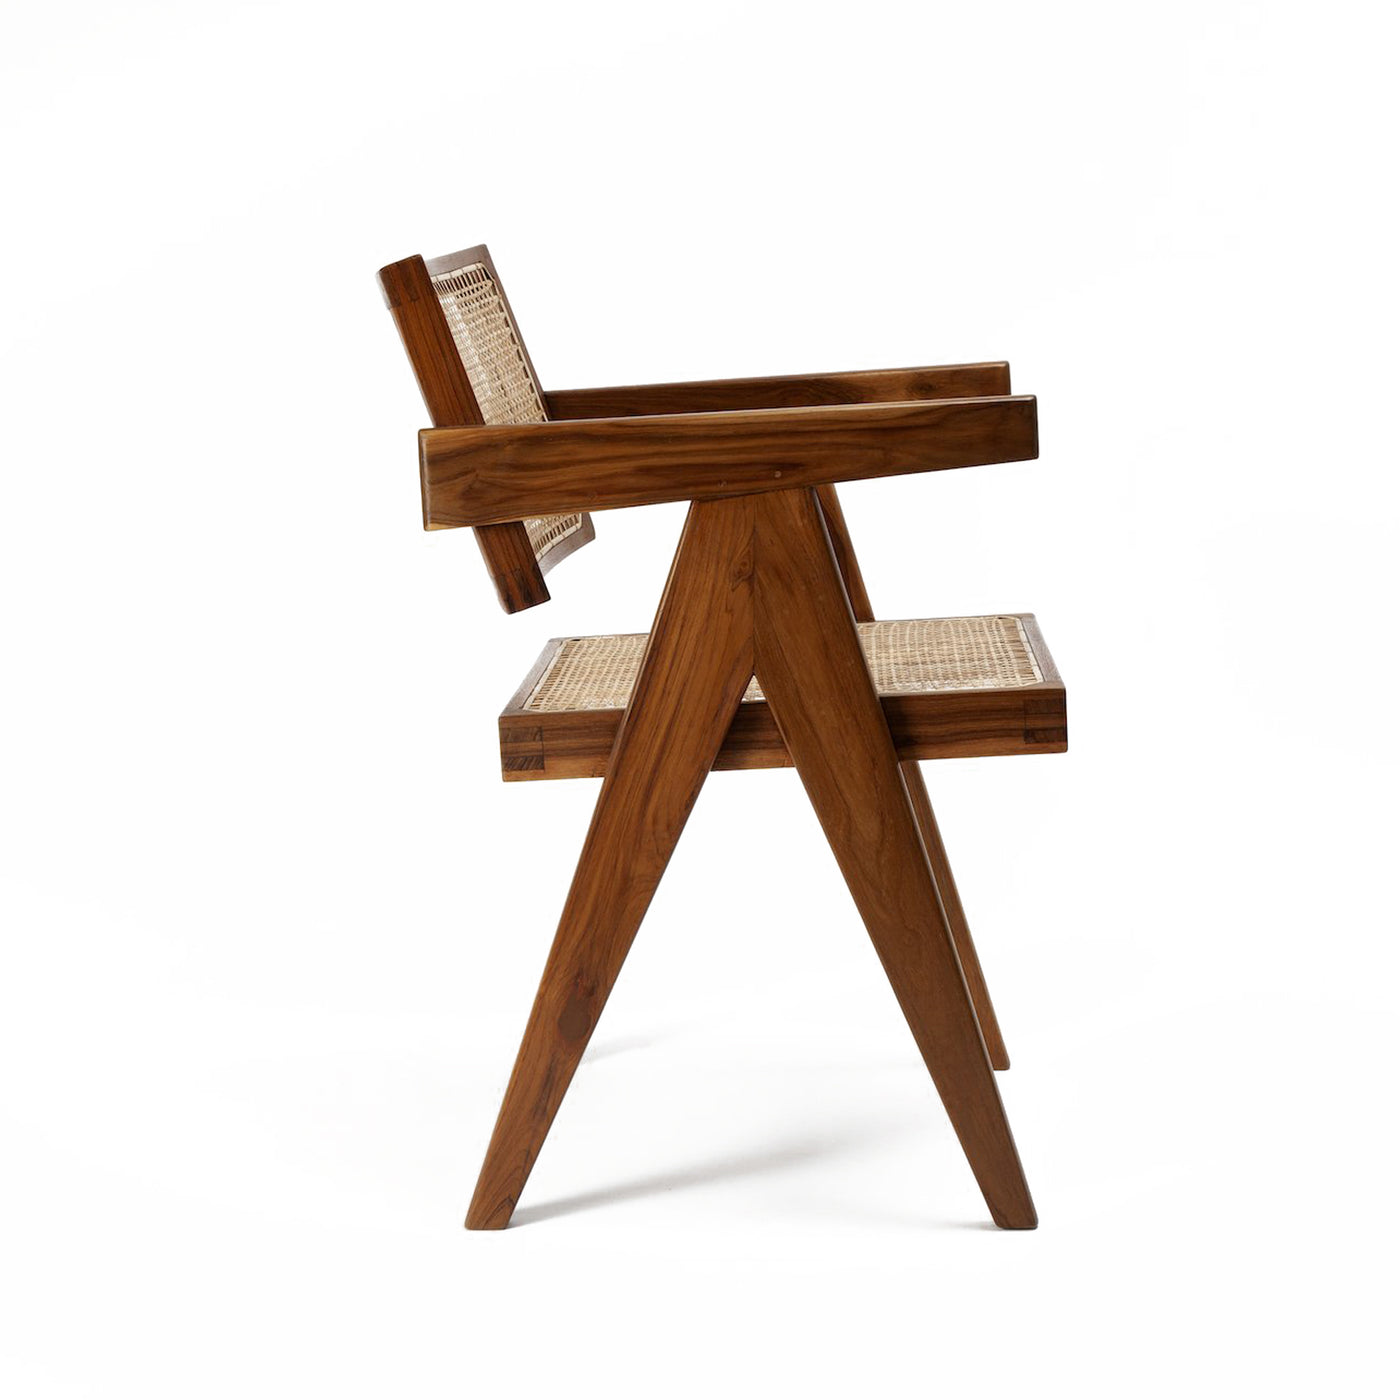 Pierre Jaenneret, židle podle pierre jeanneret, design 50. let, minimaistická židle, Srelle, Židle do minimalistických interiérů, luxusní židle,